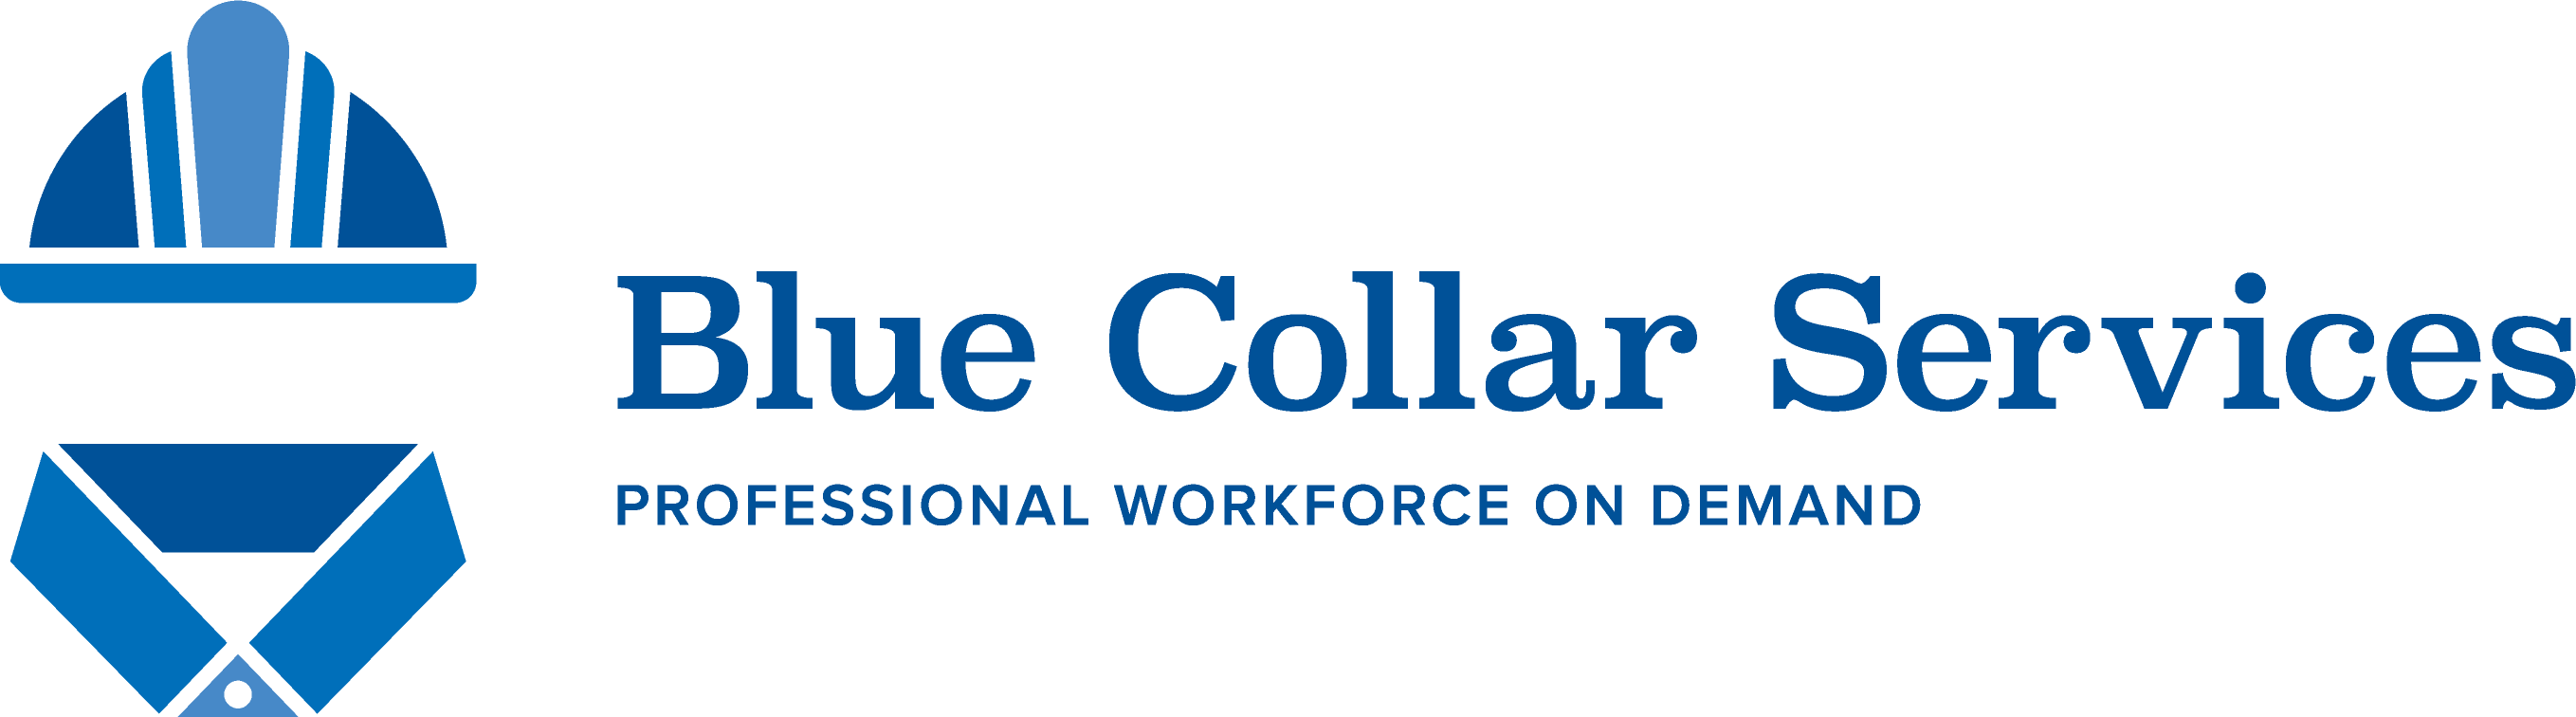 blue collar recruiting logo